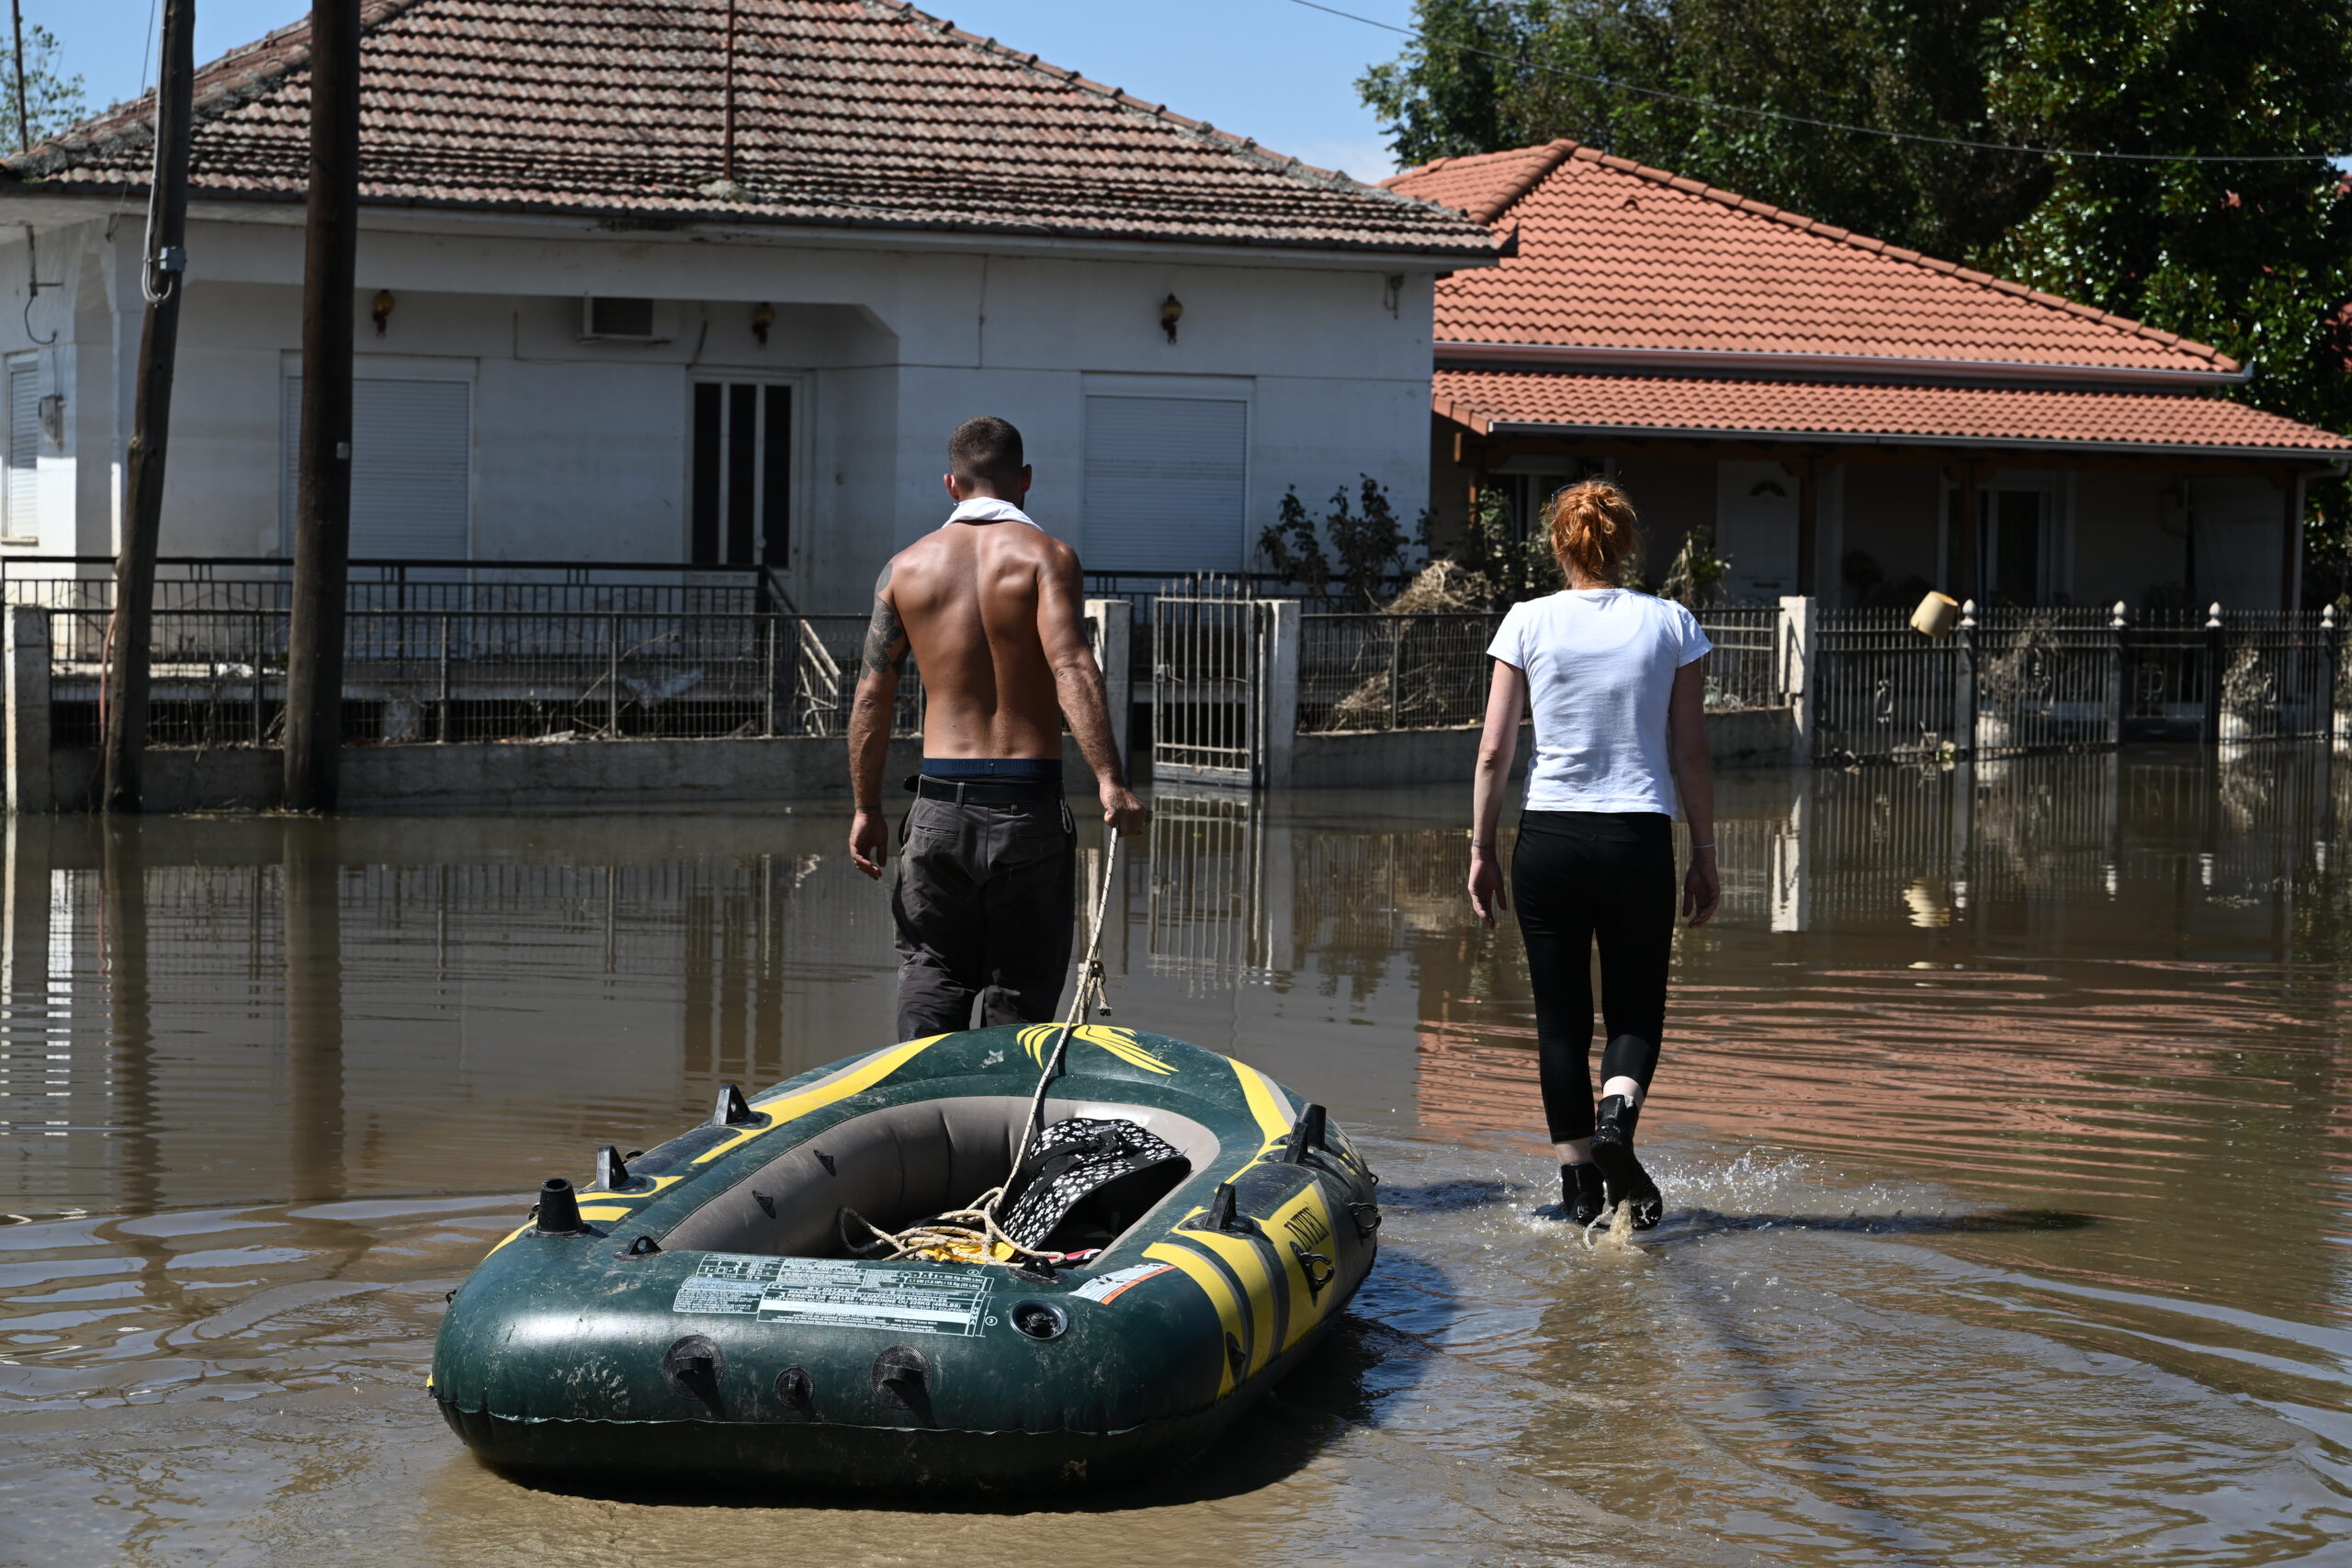 Κακοκαιρία Daniel – Πλημμύρες: Τηλεφωνική γραμμή ενημέρωσης για θέματα δημόσιας υγείας και υγιεινής